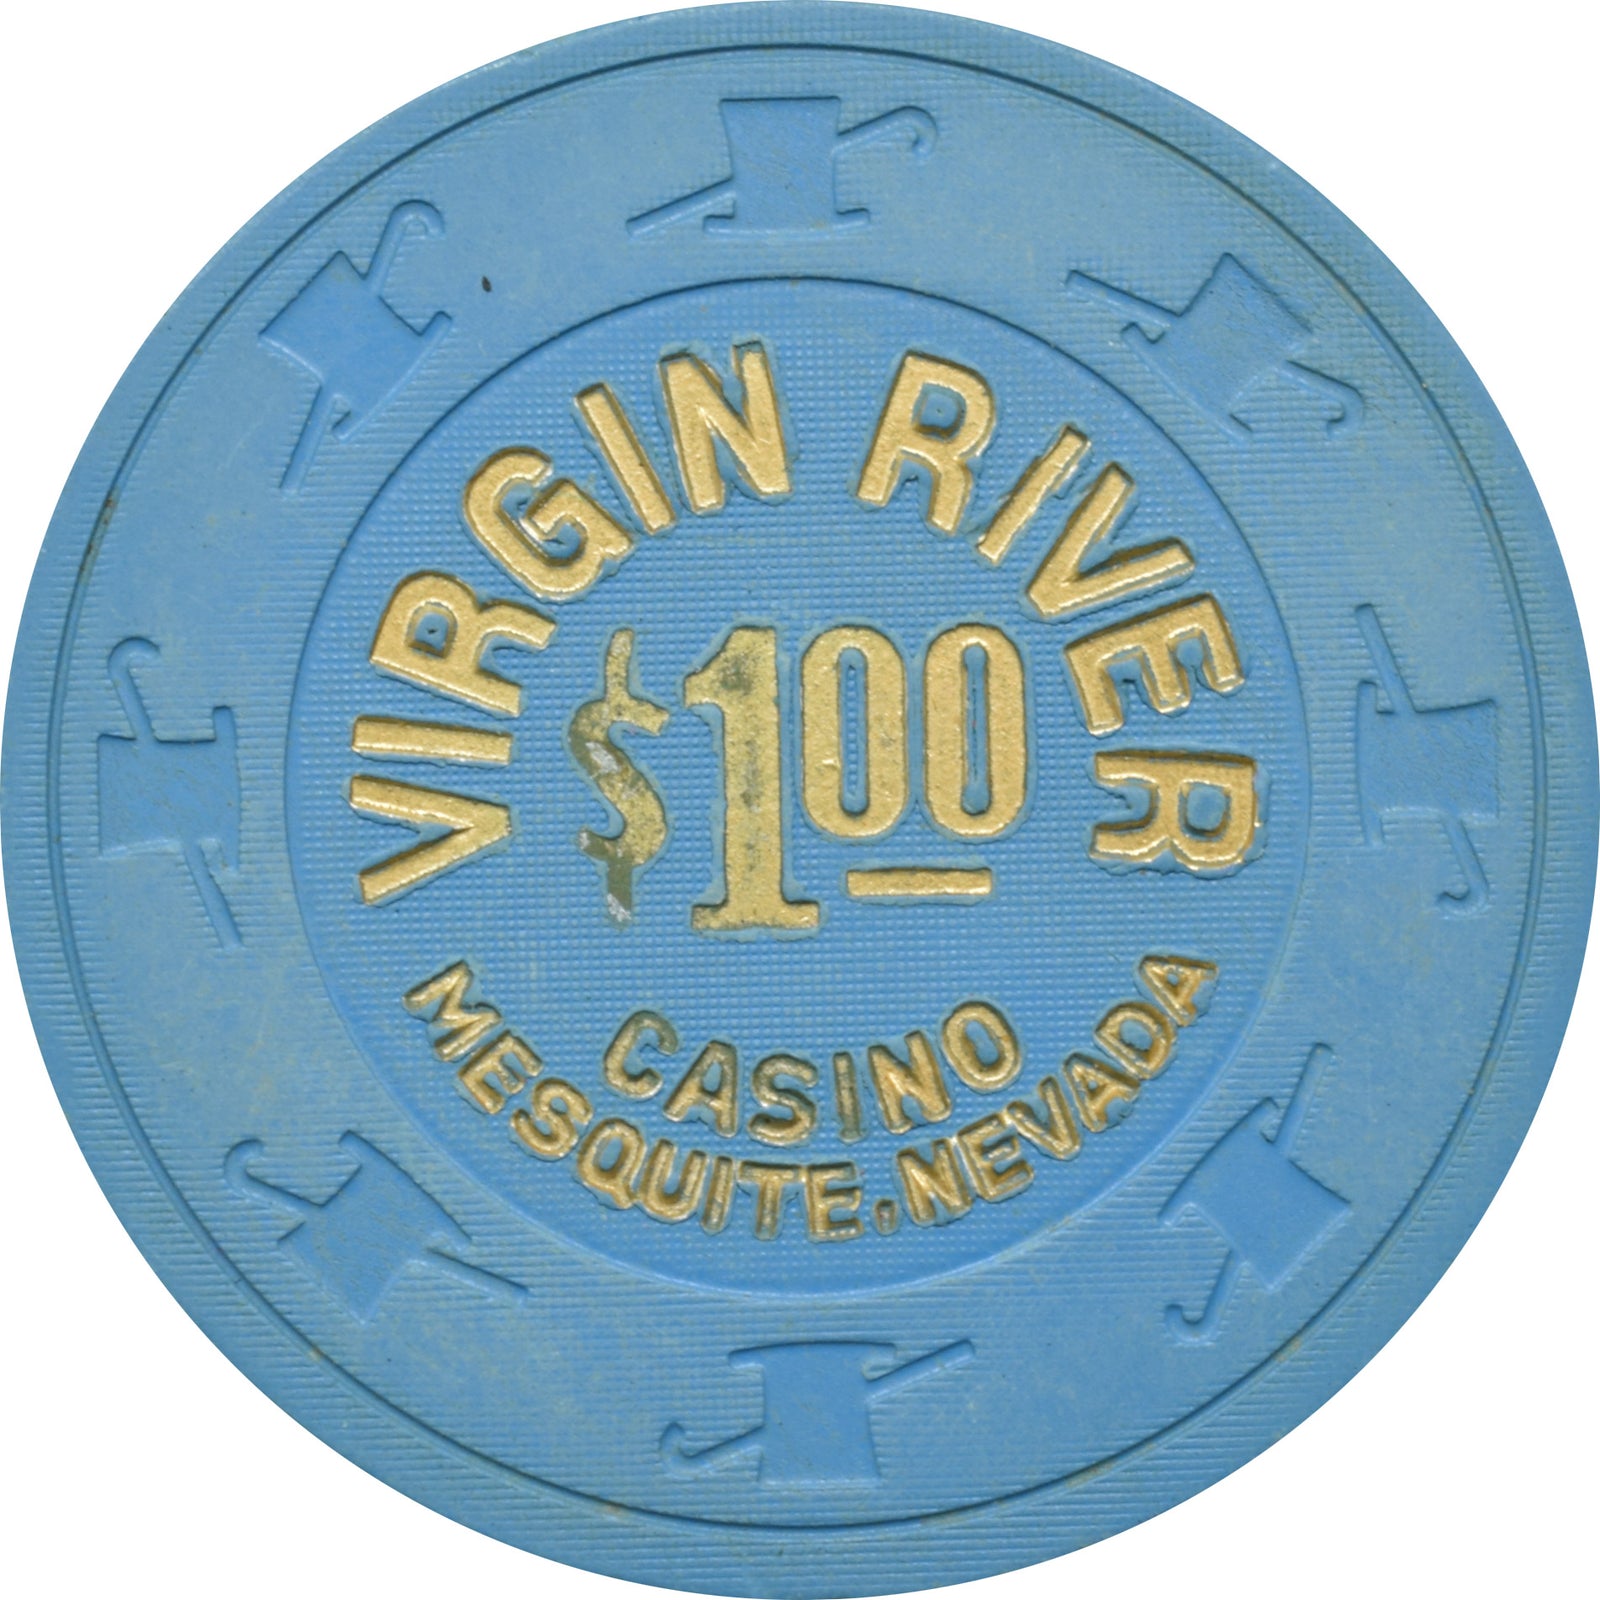 virgin river casino